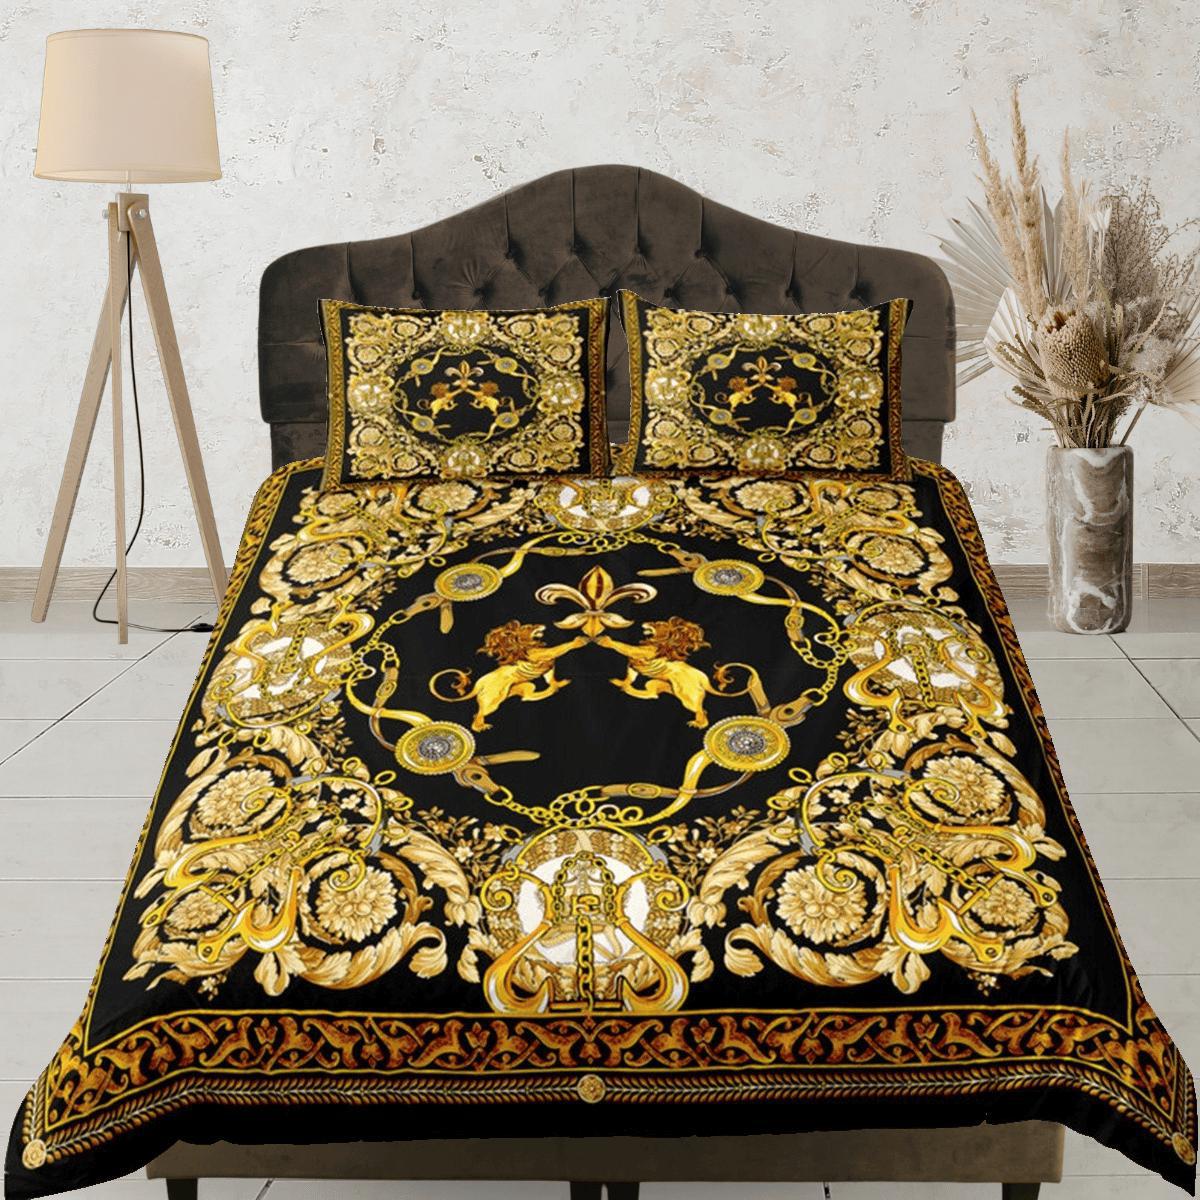 daintyduvet Baroque Black Gold Lion Luxury Duvet Cover Aesthetic Bedding Set Full Victorian Decor